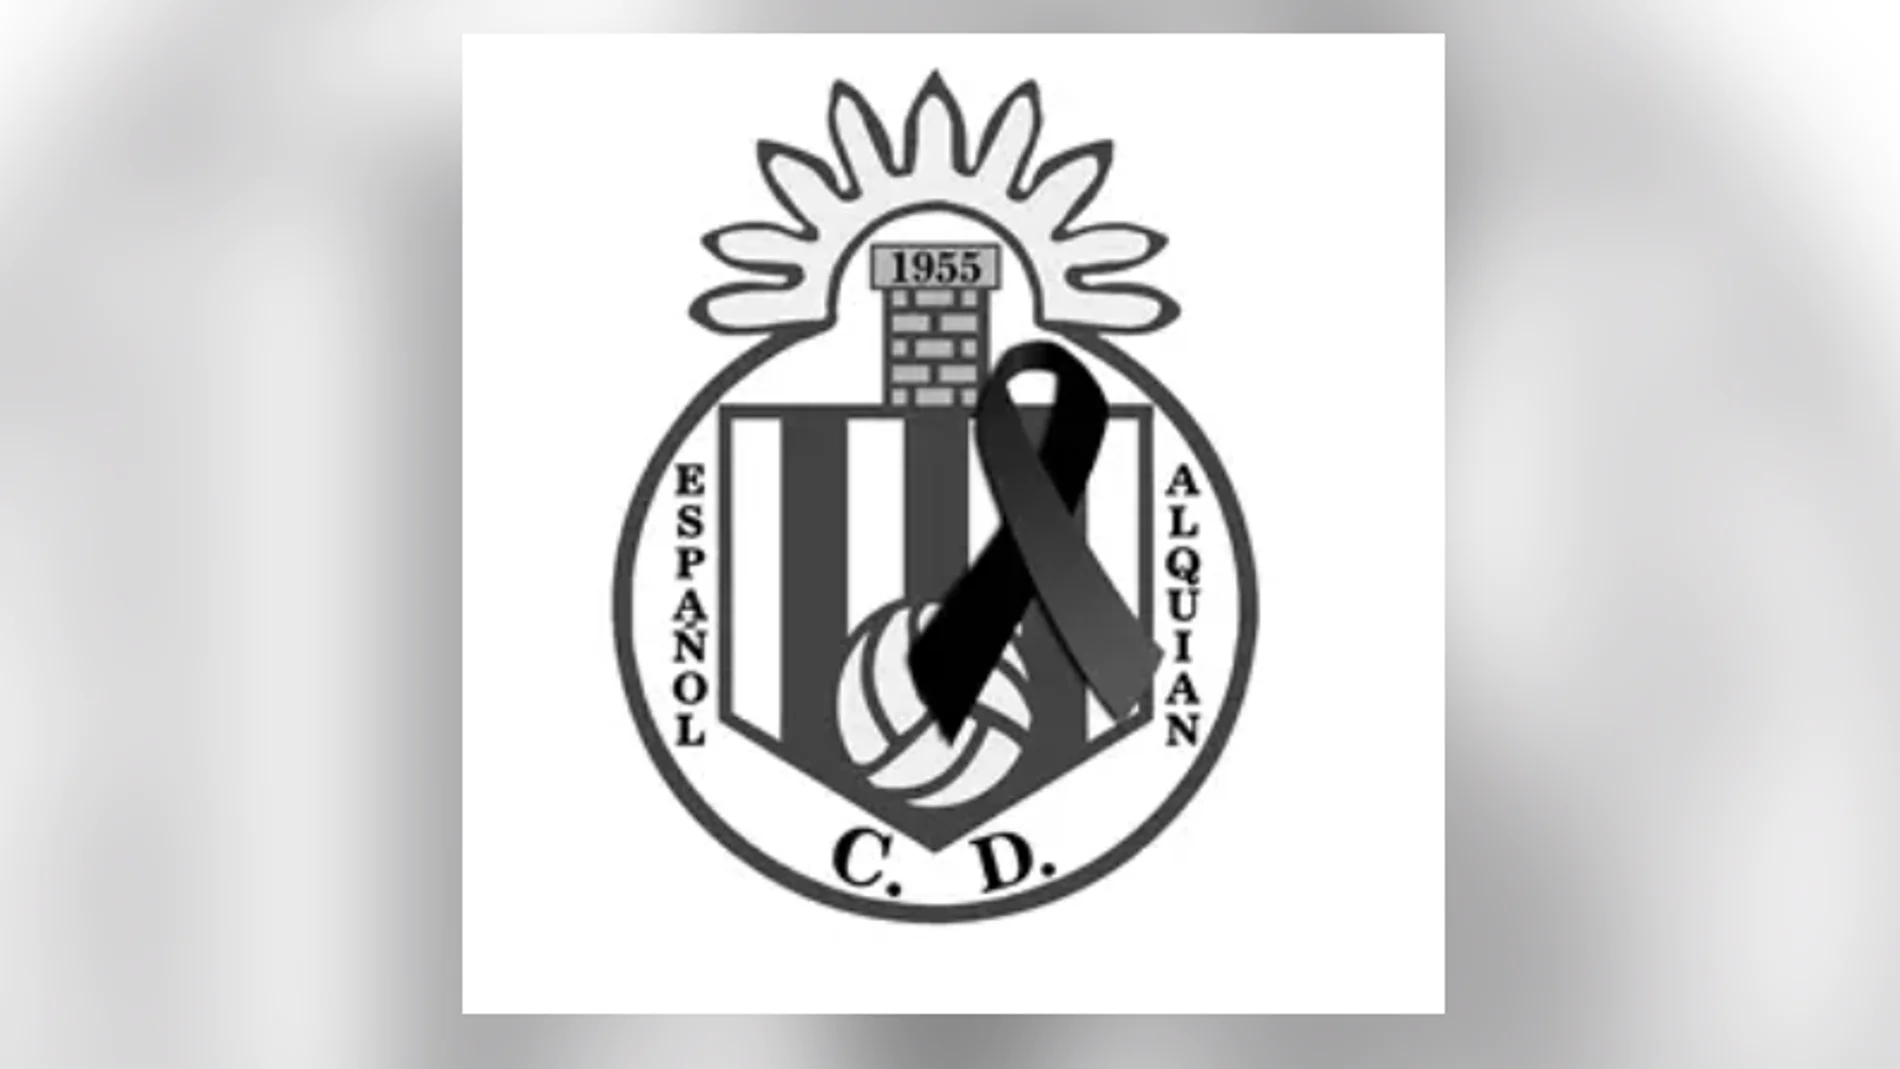 Fallece el jugador de fútbol Raúl Martínez del Español, de El Alquián de Almería, al sufrir un accidente de tráfico